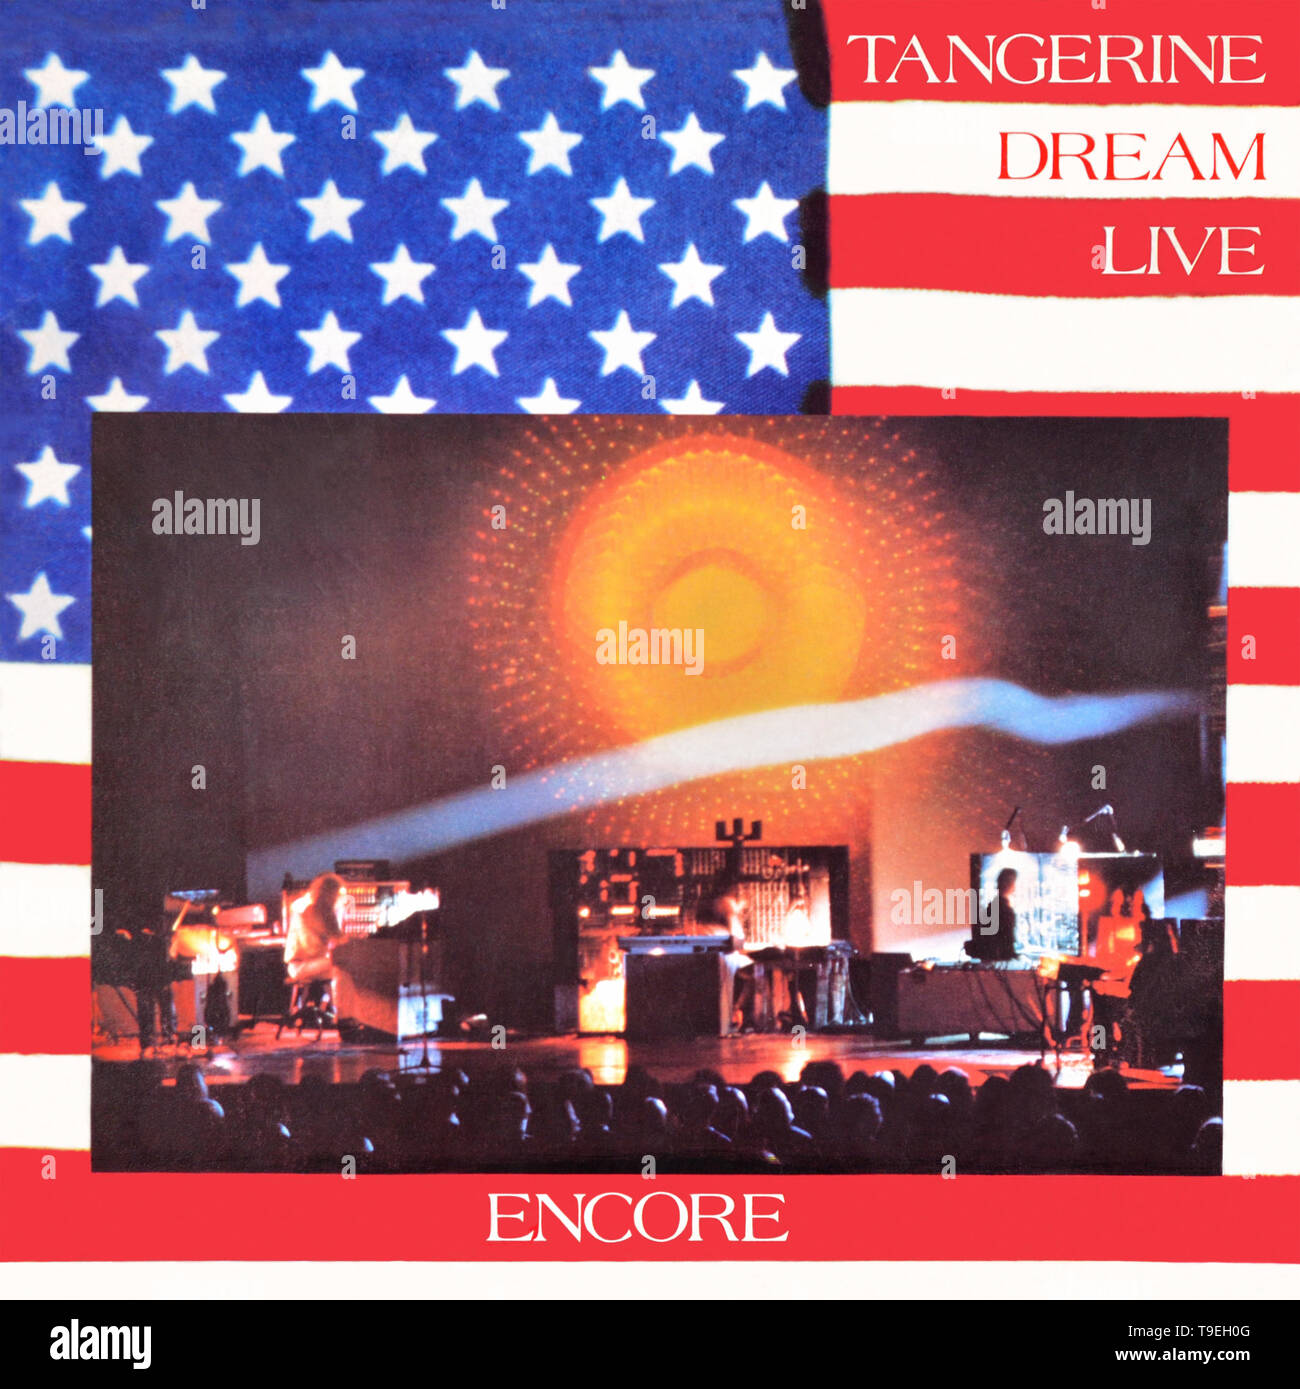 Tangerin Dream - original Vinyl Album Cover - Encore - 1977 Stockfoto